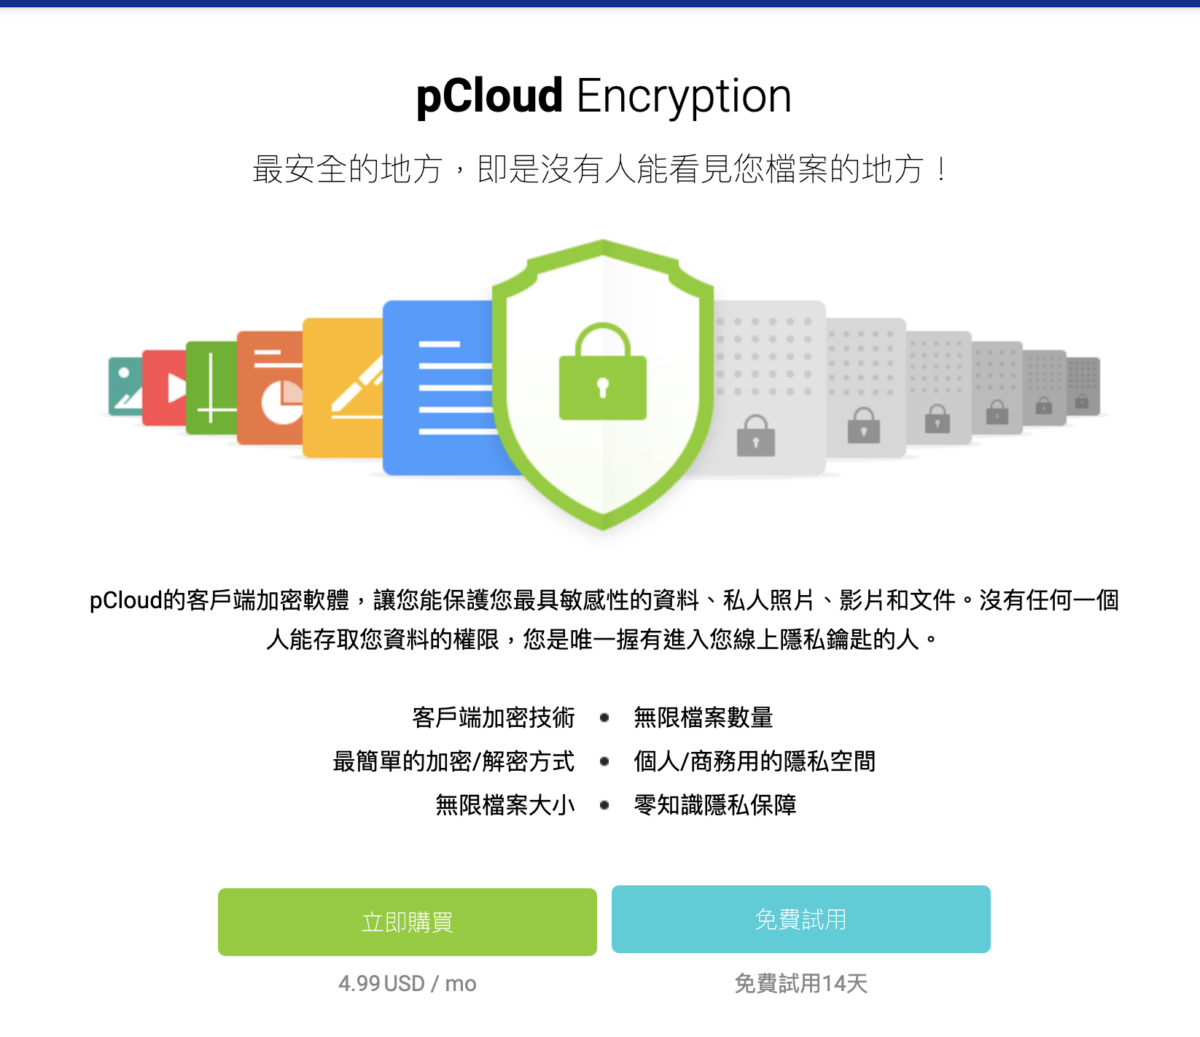 pClous 雙 11 光棍節 大促銷 pCloud Encryption